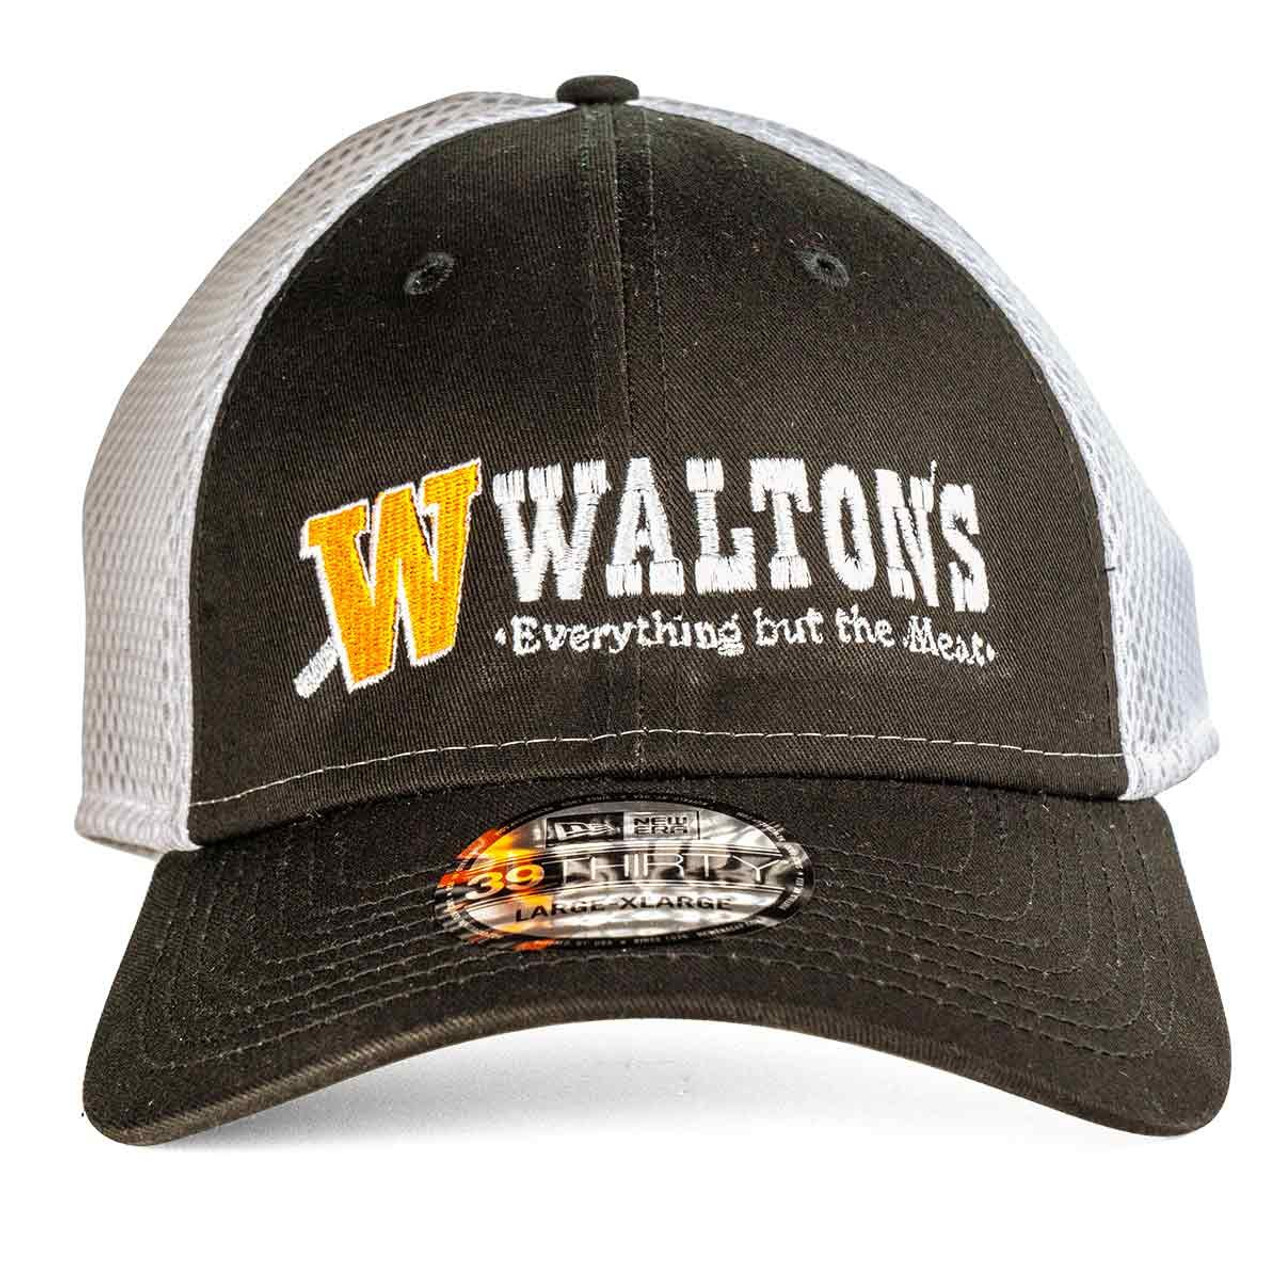 Walton's Black/White Hat